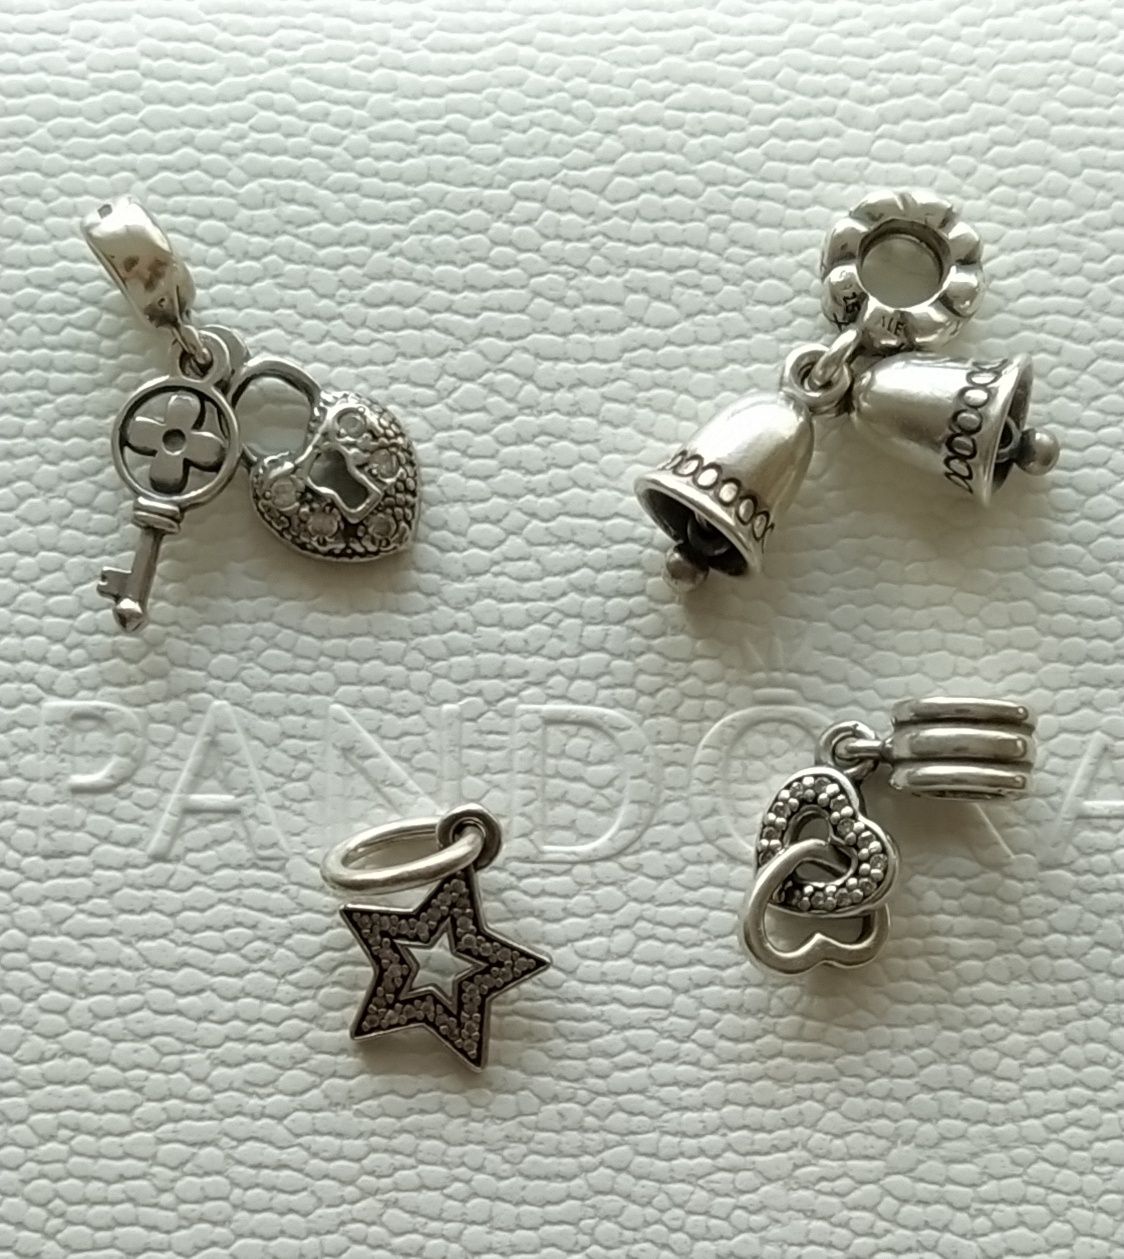 Продам оригинальный, серебряный браслет от Pandora с шармами.